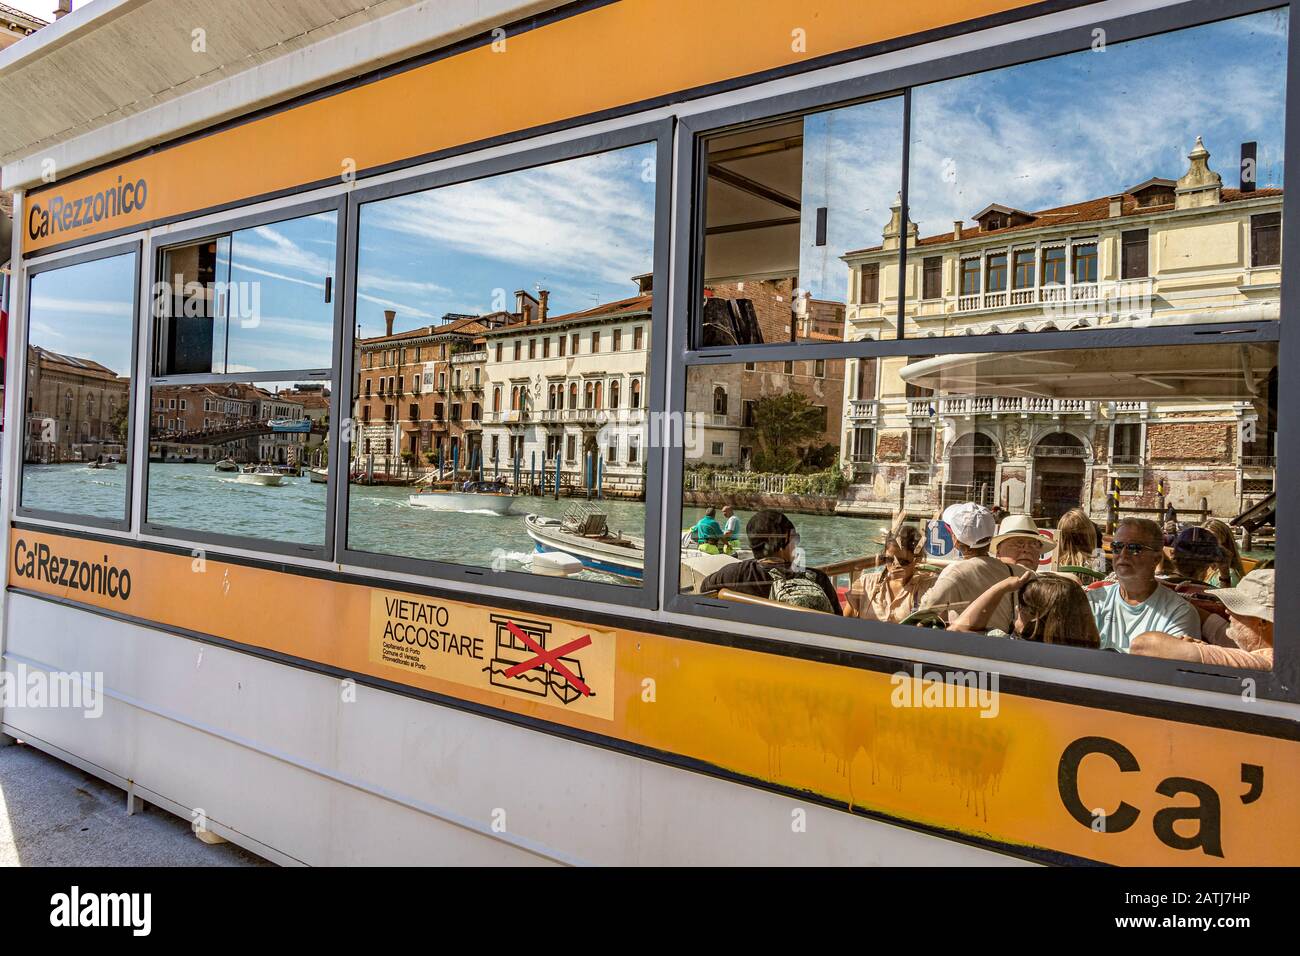 I passeggeri del vaporetto o del vaporetto si riflettono nelle finestre di vetro della fermata Ca' Rezzonico del vaporetto sul Canal Grande, Venezia, Italia Foto Stock